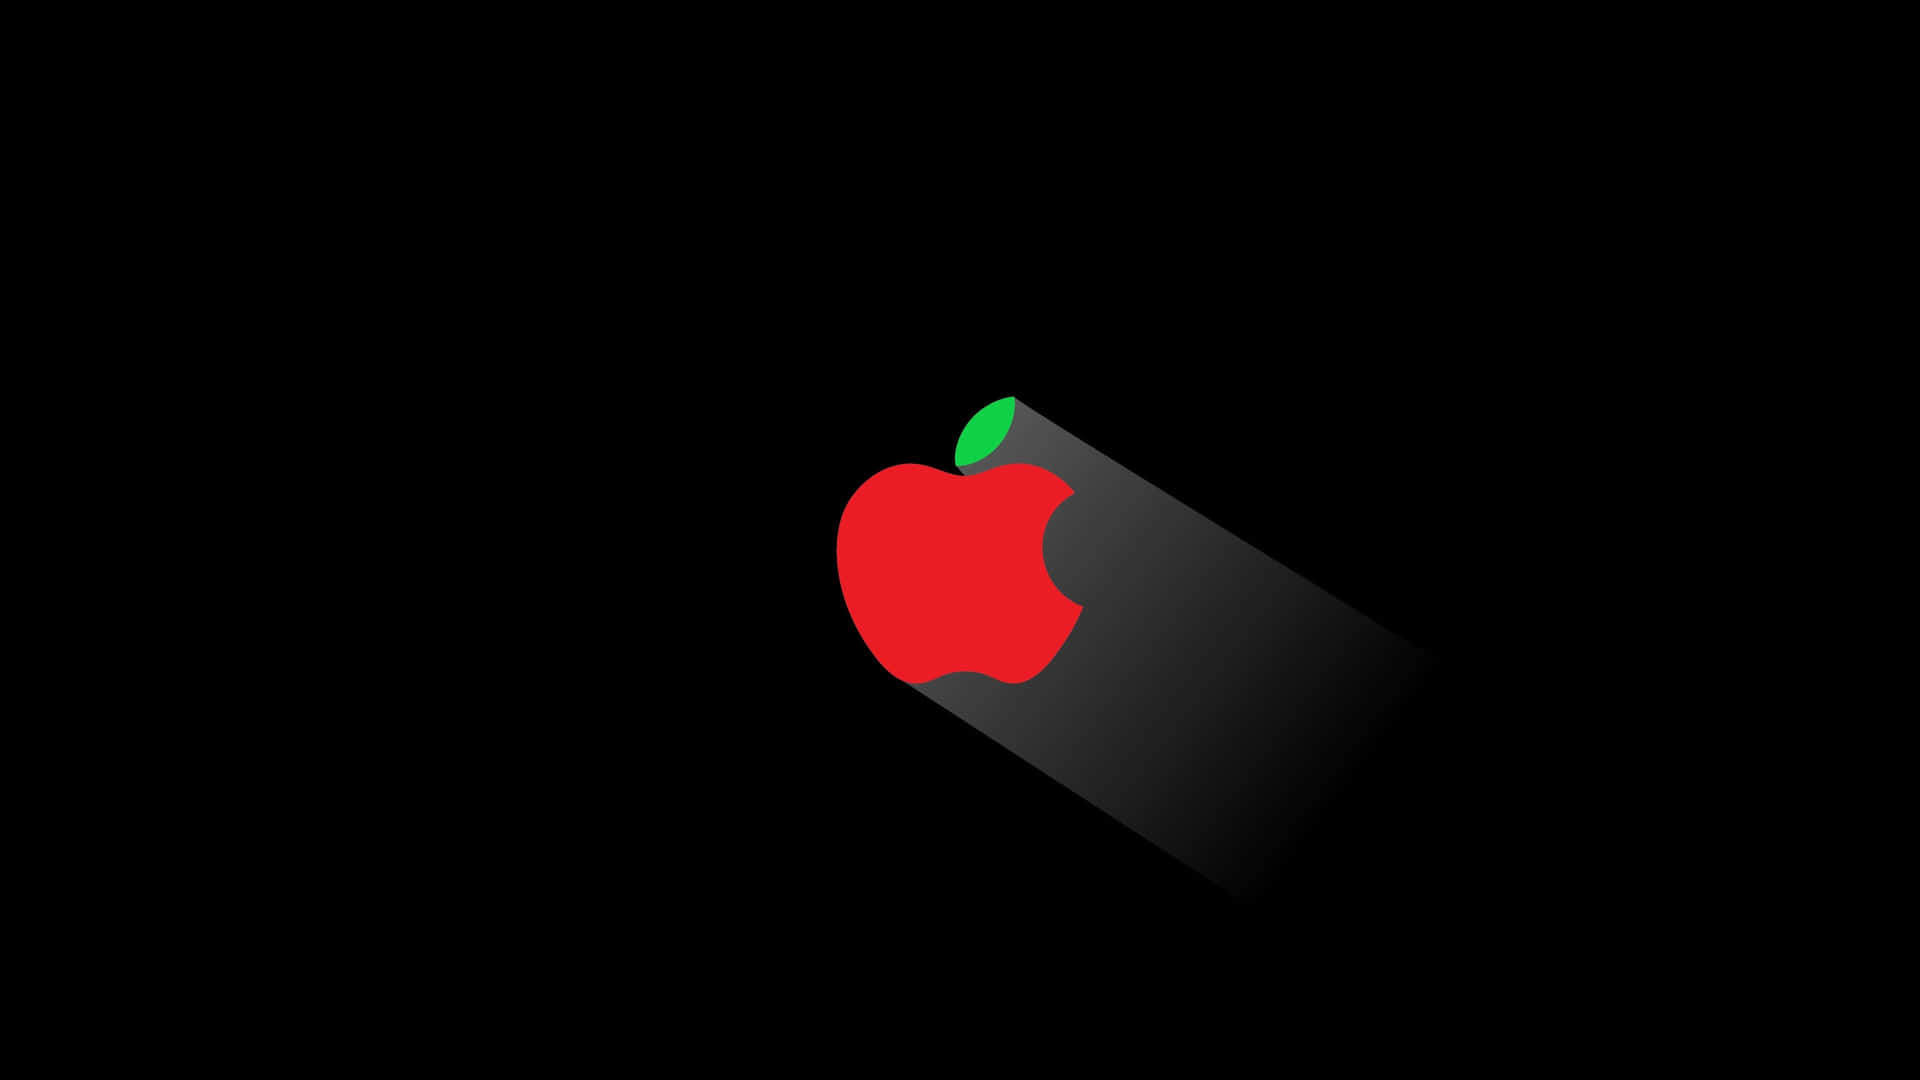 Einapple-logo Mit 4k-auflösung Auf Schwarzem Hintergrund. Wallpaper